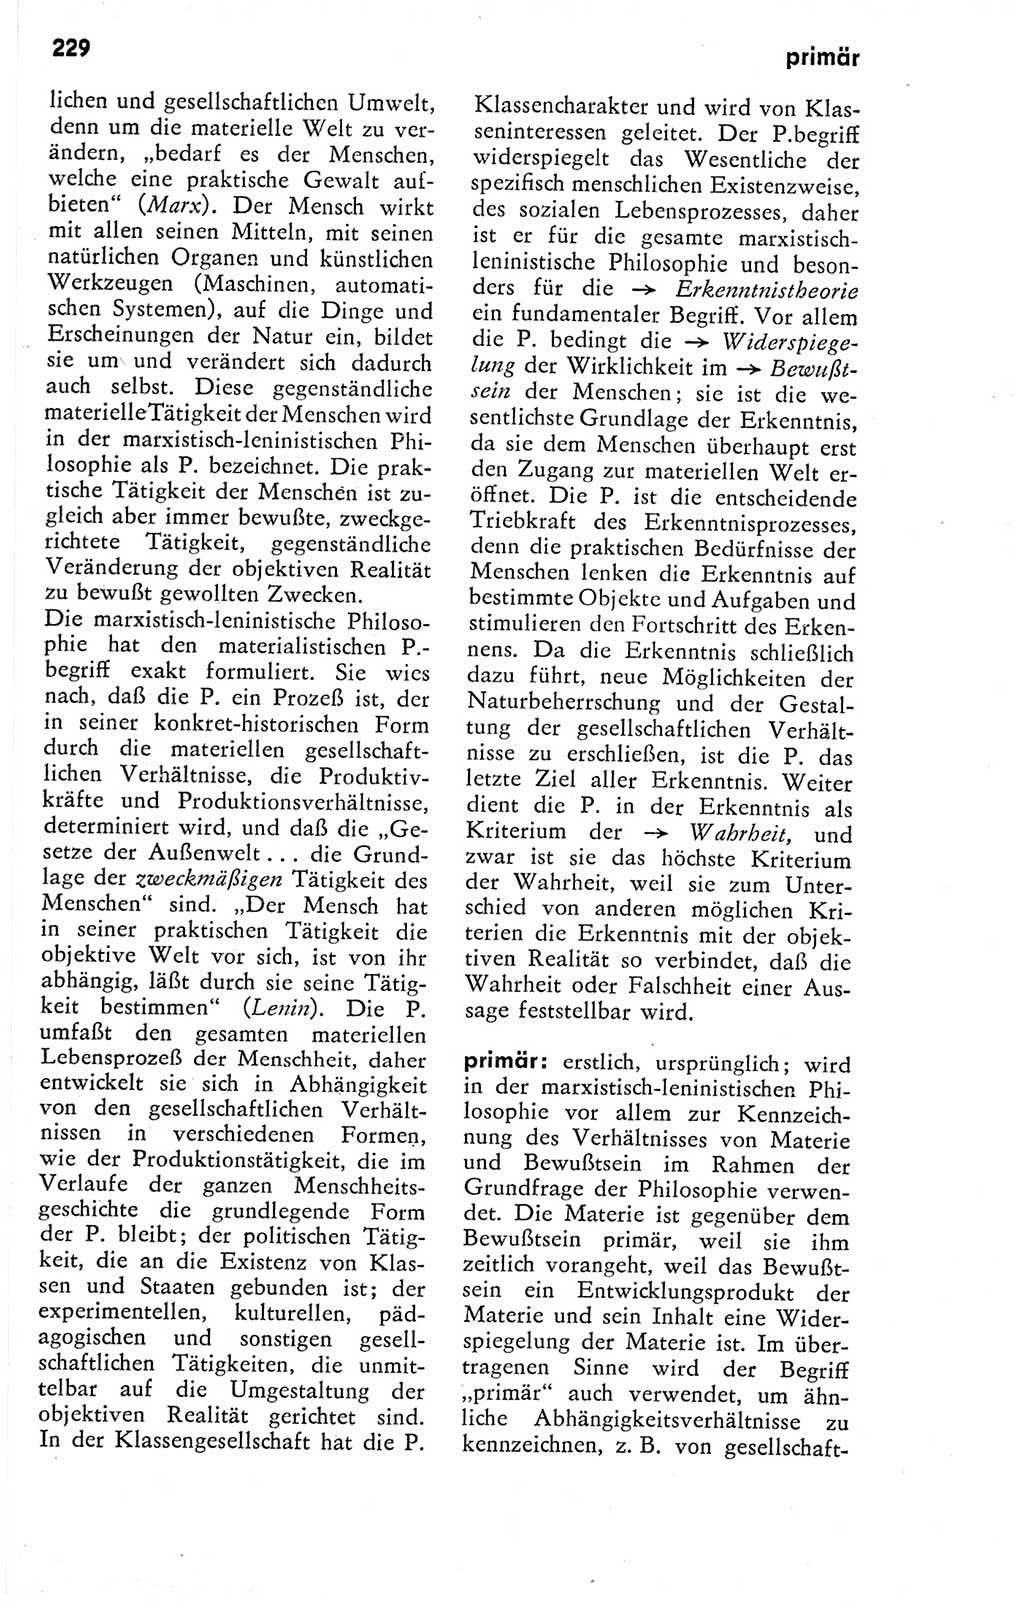 Kleines Wörterbuch der marxistisch-leninistischen Philosophie [Deutsche Demokratische Republik (DDR)] 1974, Seite 229 (Kl. Wb. ML Phil. DDR 1974, S. 229)